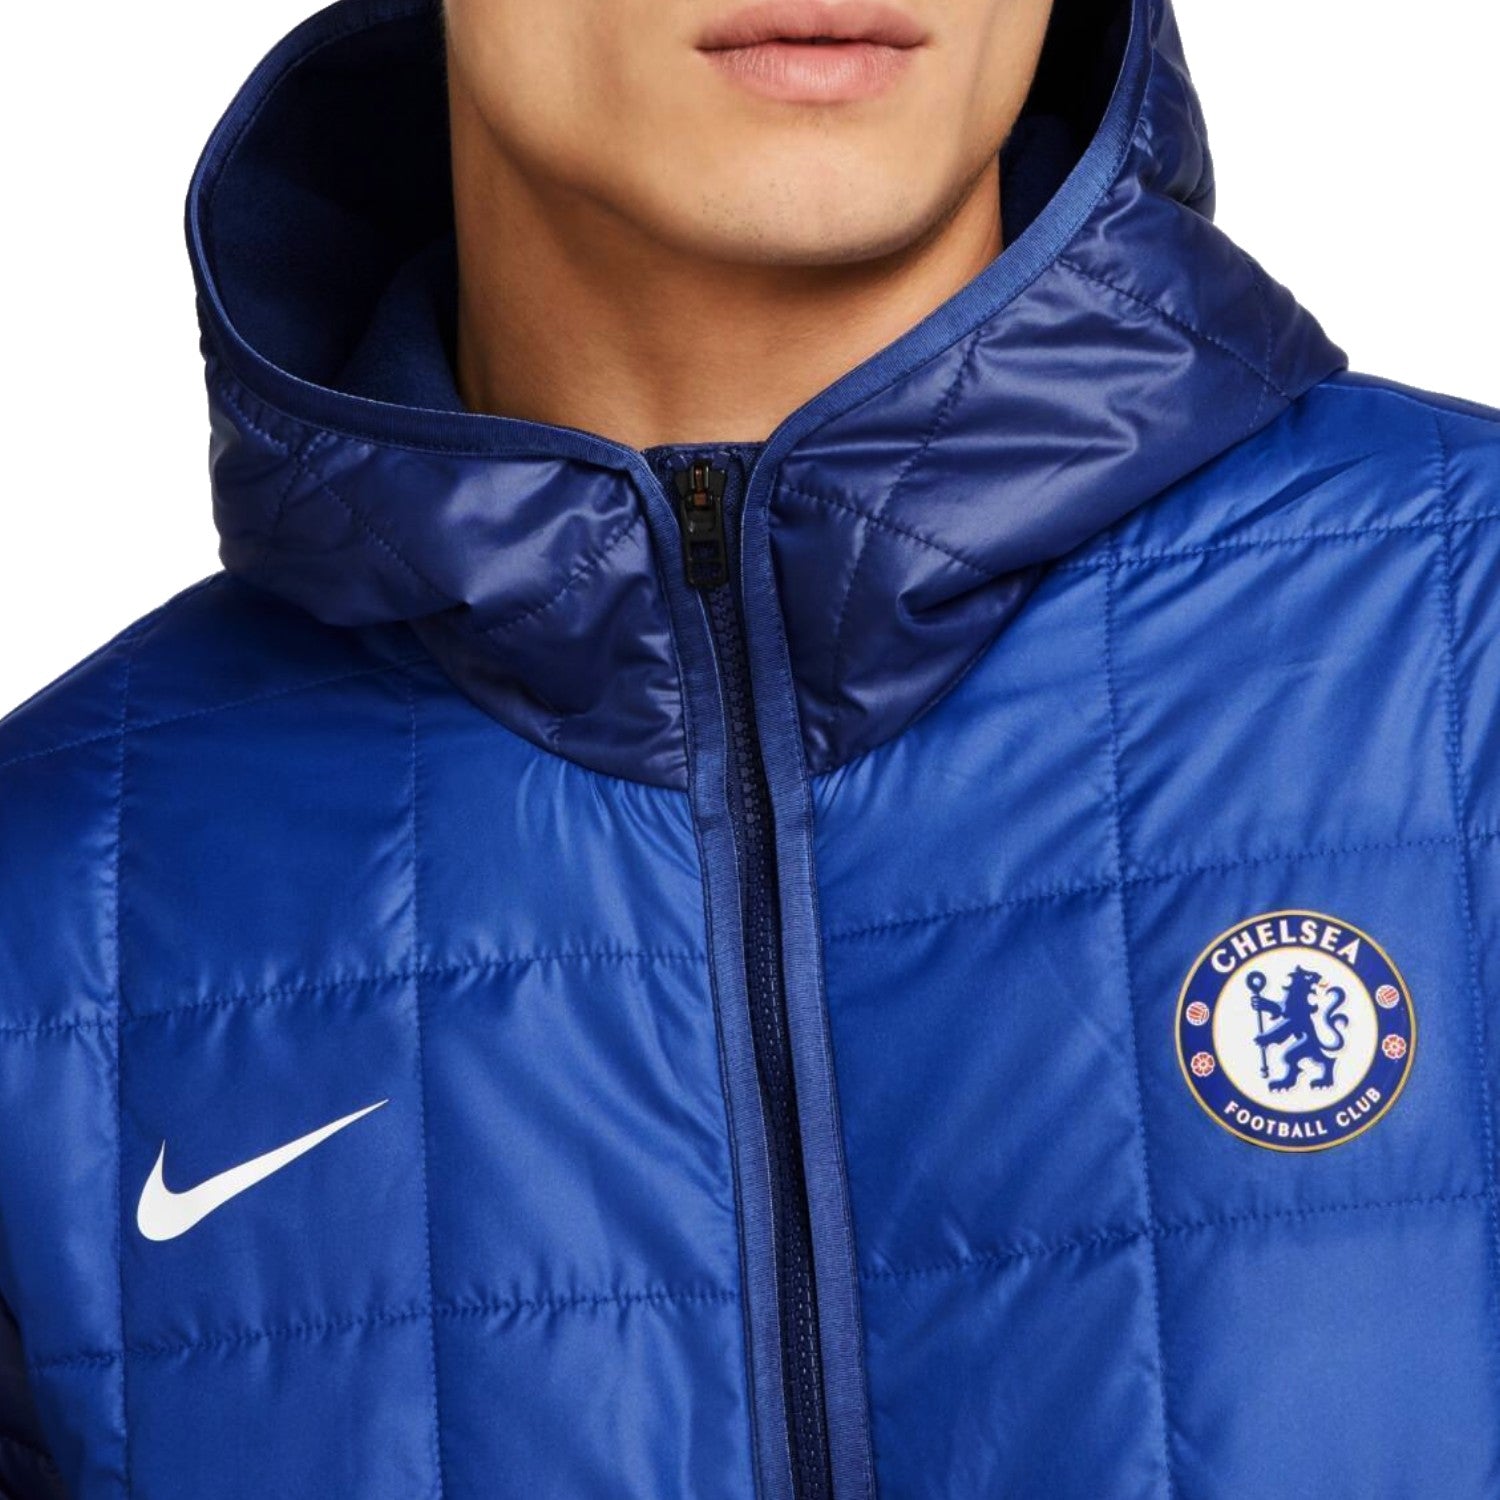 Chelsea bomber jacket 2021/22 Nike –